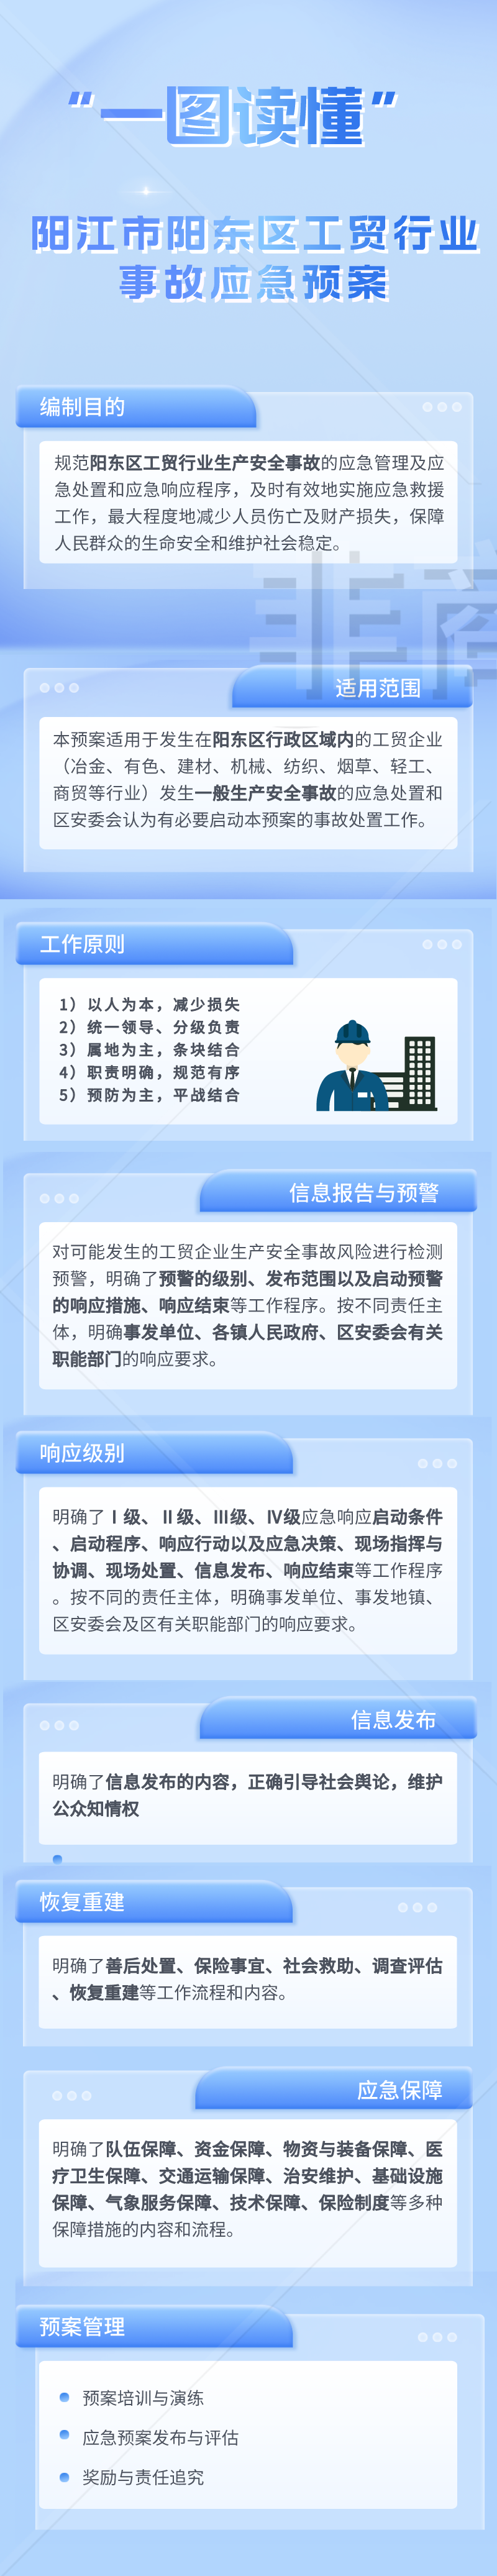 阳江市阳东区工贸行业事故应急预案 一图读懂.png